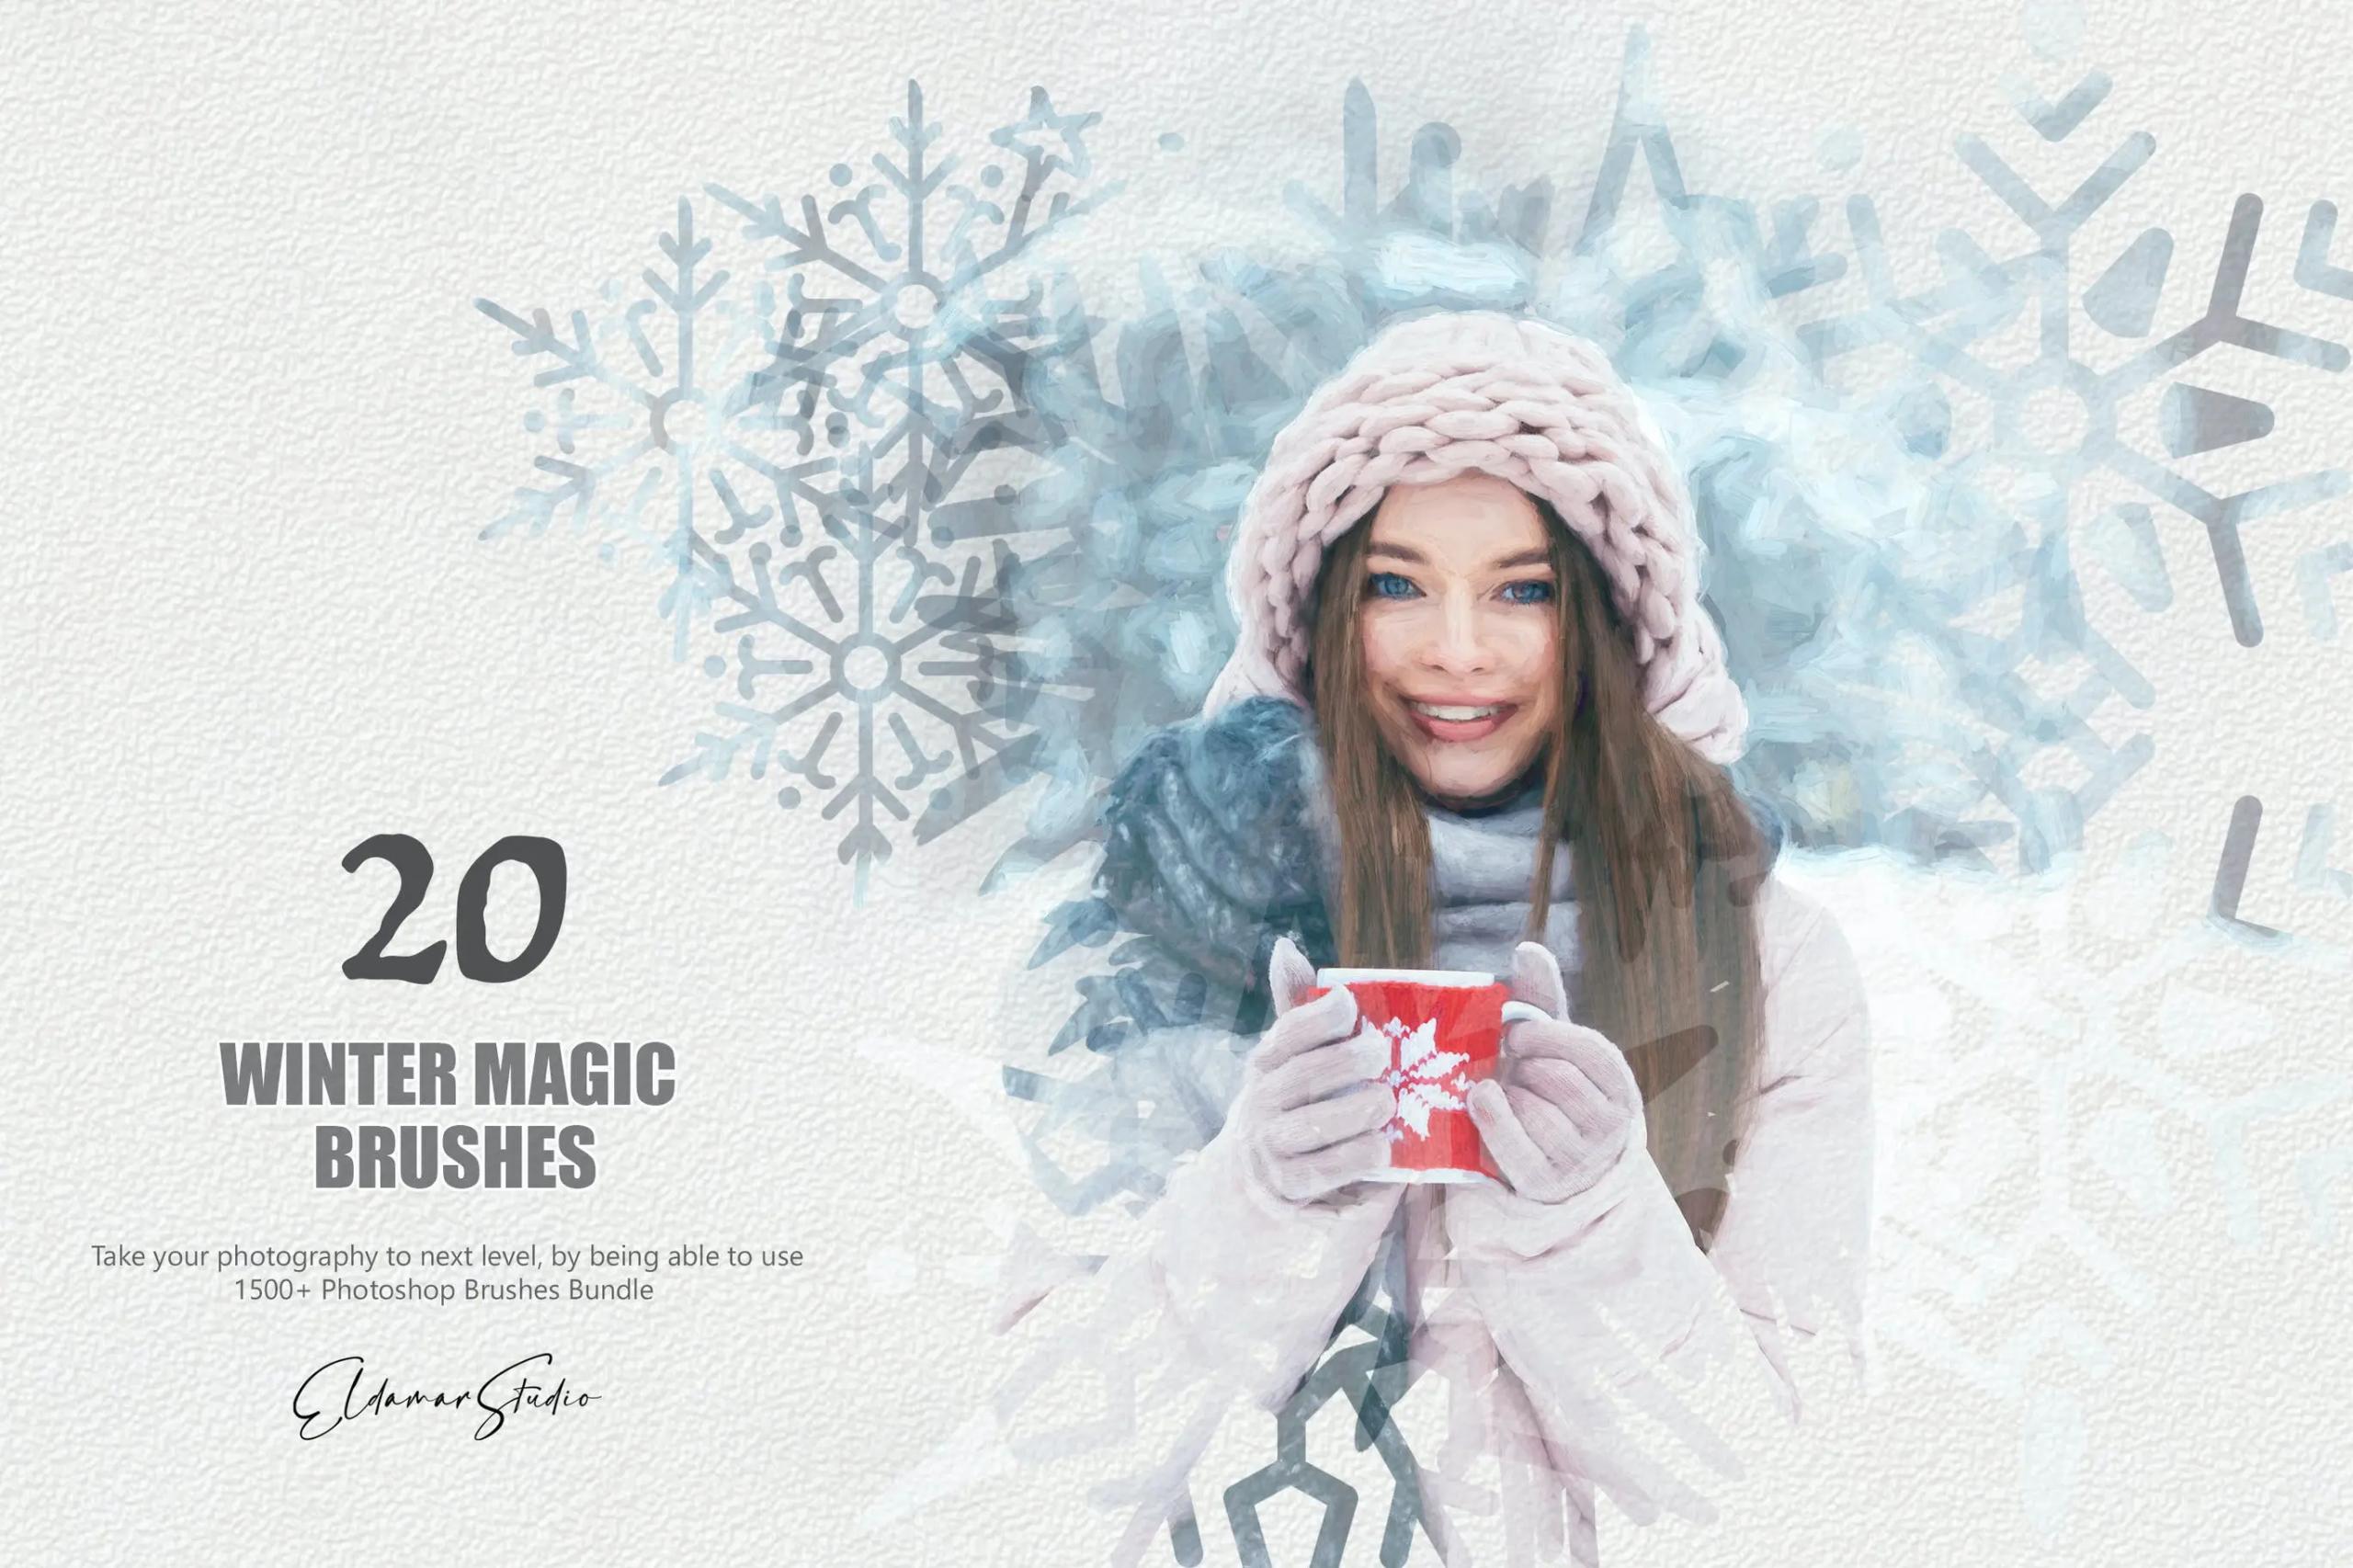 20款冬季魔法PS雪花礼盒圣诞元素笔刷设计素材下载 20 Winter Magic Photoshop Brushes